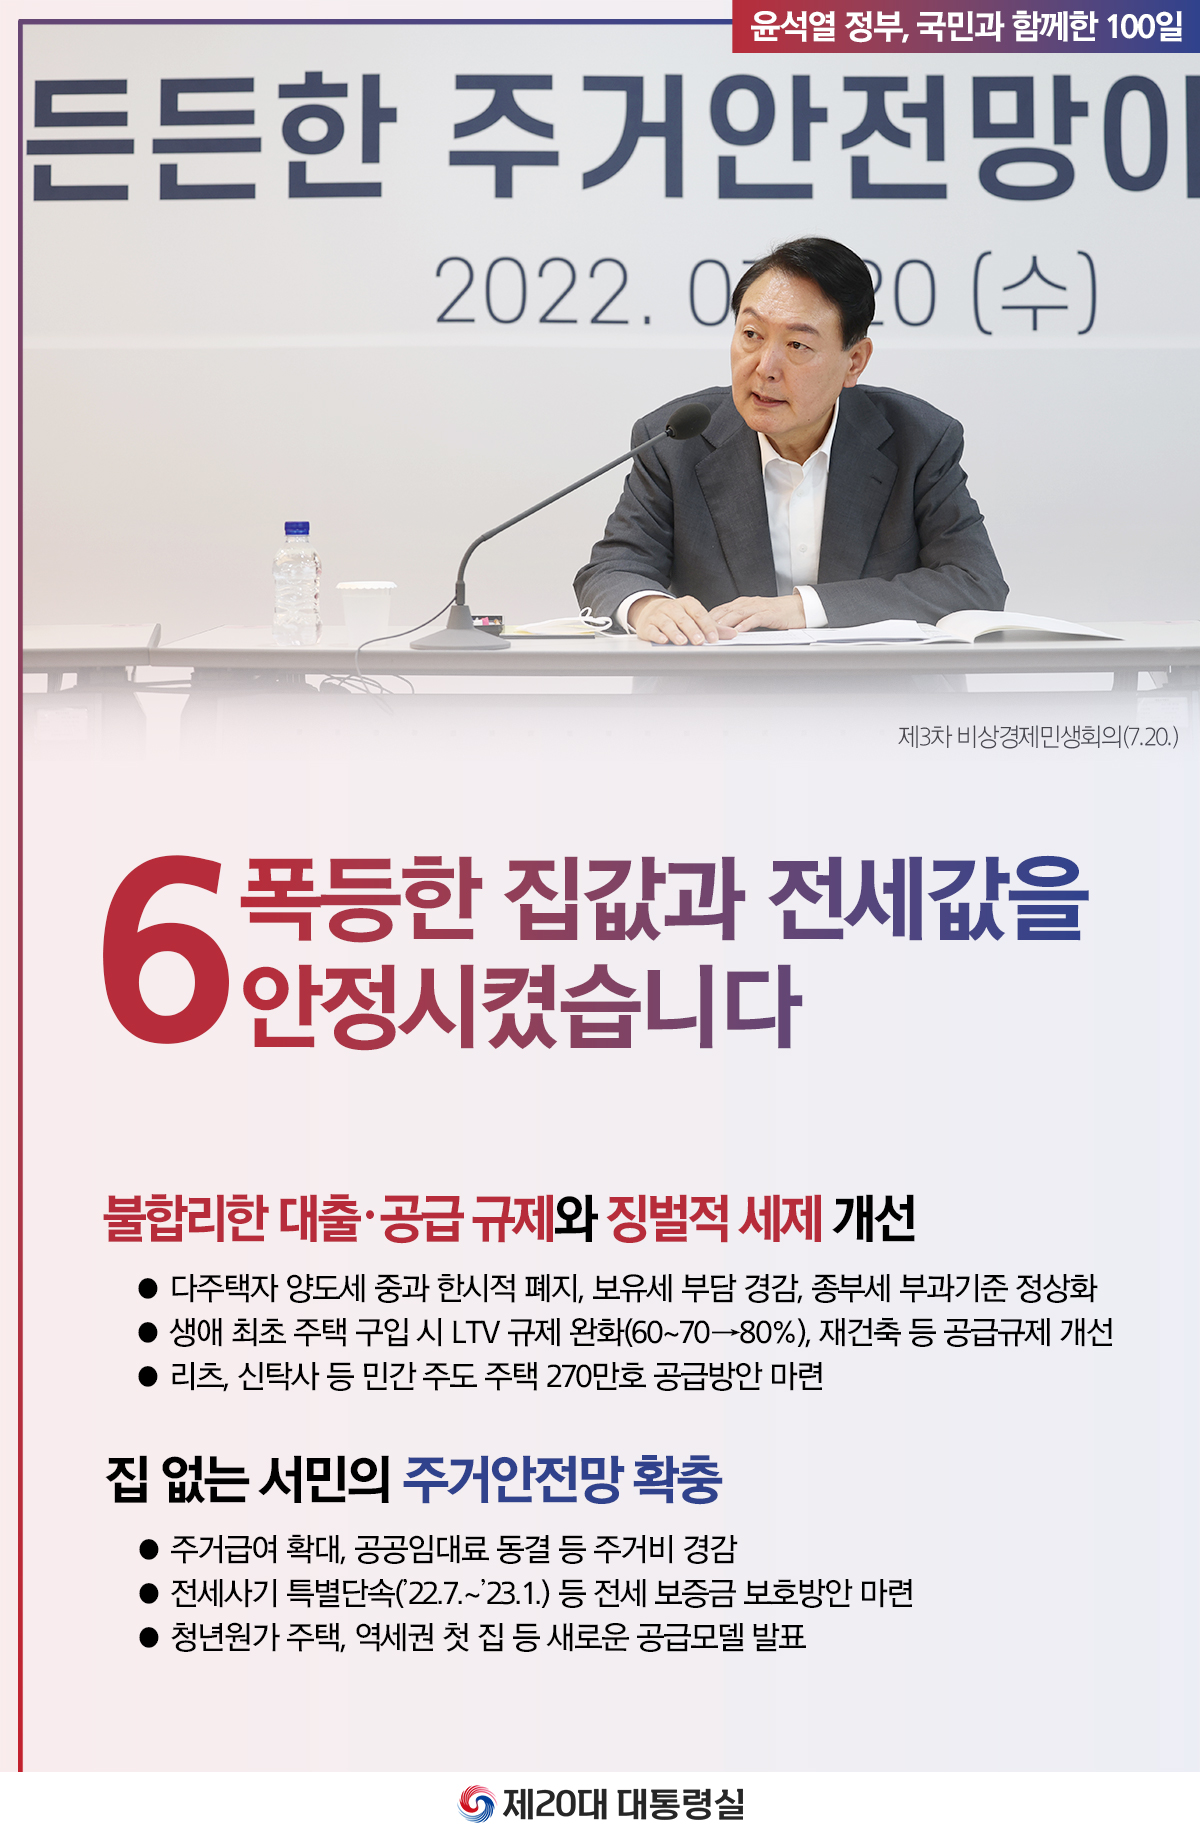 윤석열 정부의 100일, 국민과 함께한 시간들 슬라이드6